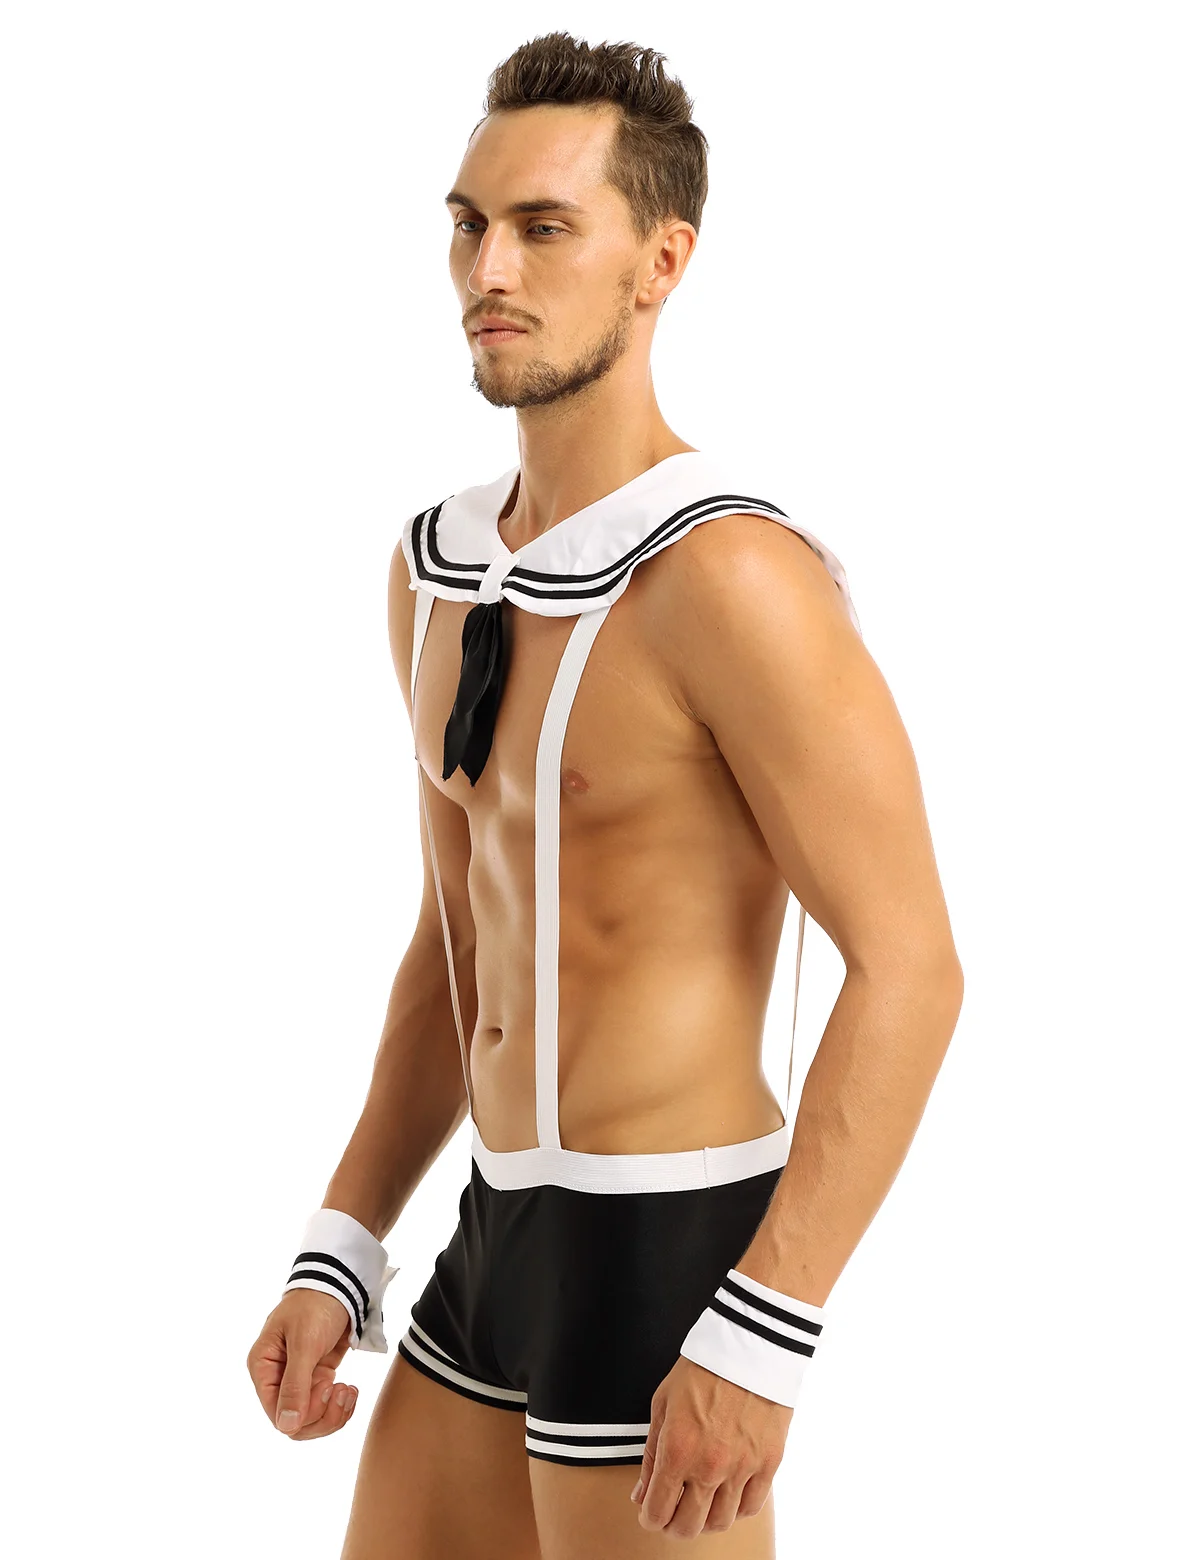 Мужской сексуальный костюм моряка, комбинезон для косплея, комплект нижнего белья, подтяжки, боксер с воротником, манжеты, костюмы на Хэллоуин для ролевых игр